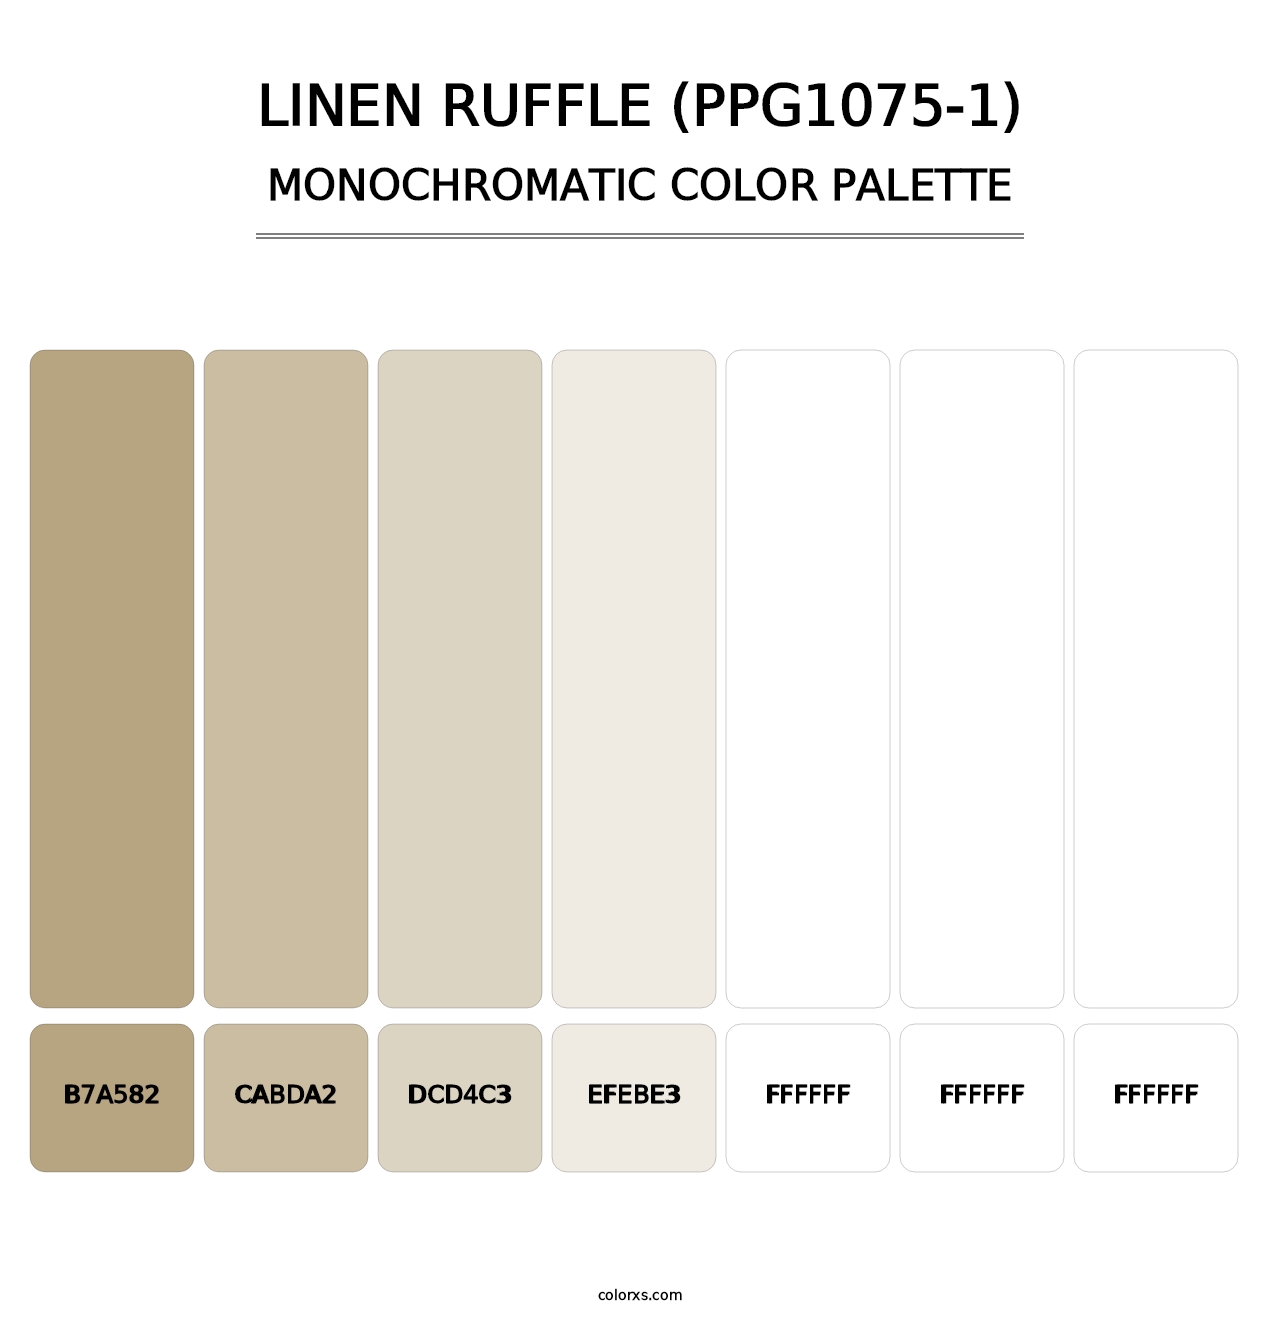 Linen Ruffle (PPG1075-1) - Monochromatic Color Palette